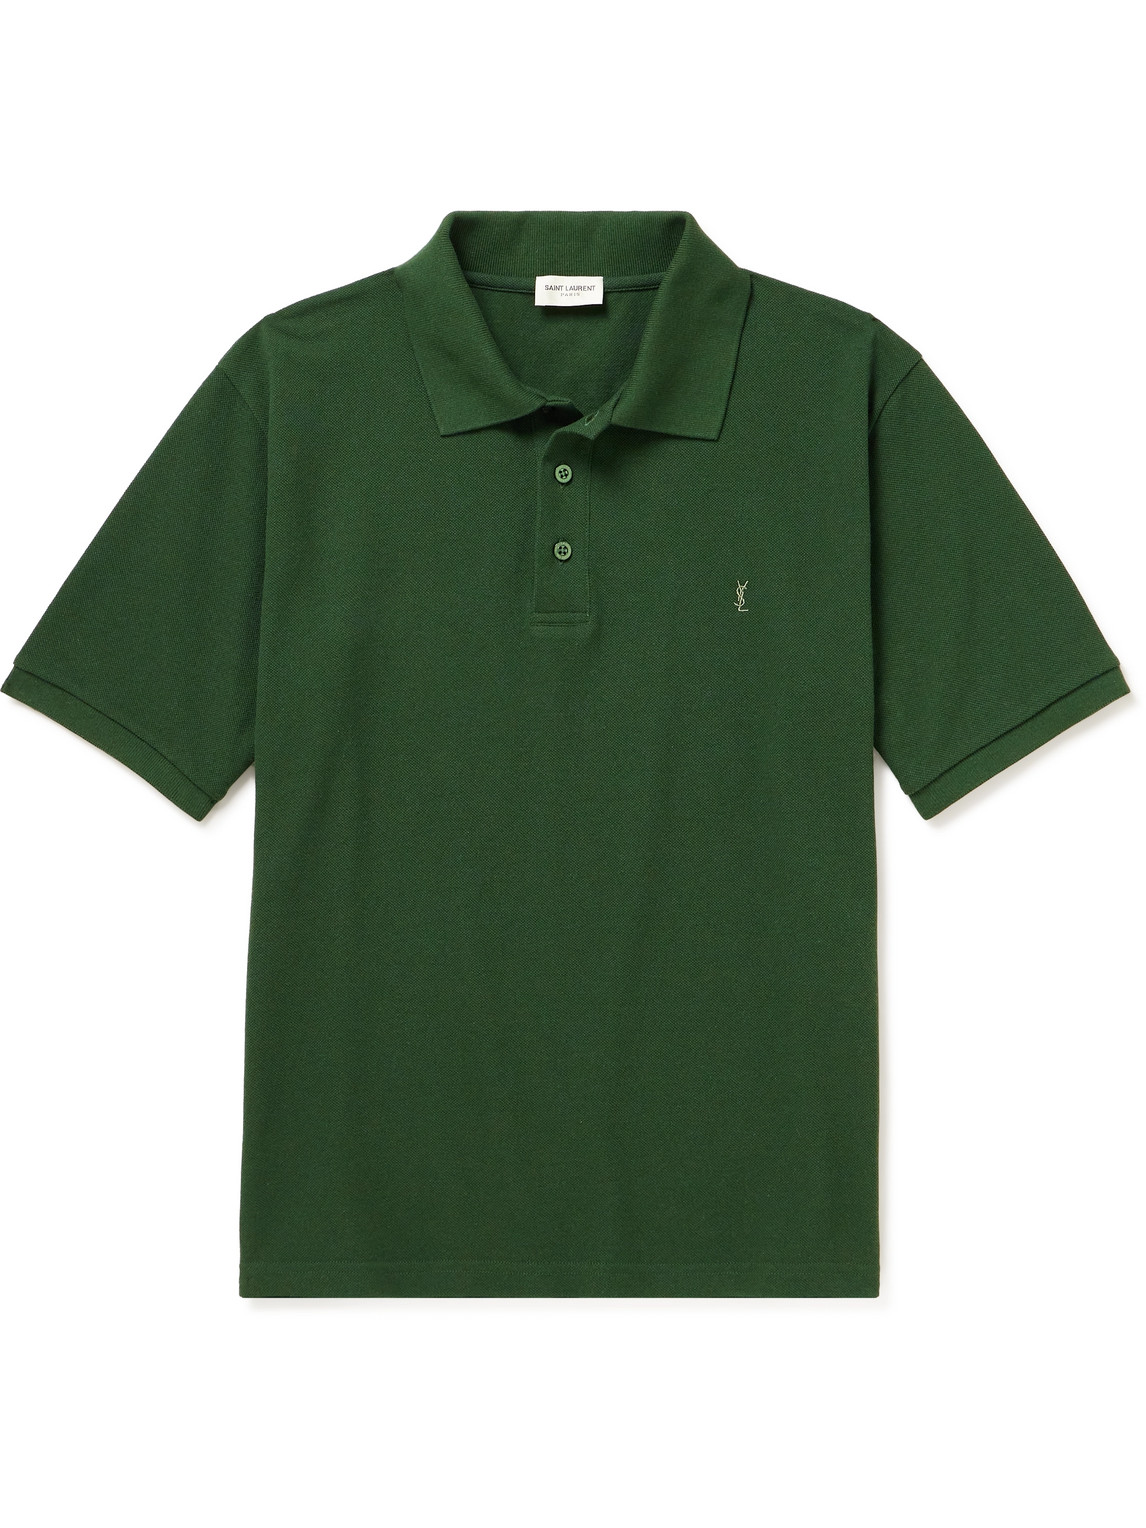 SAINT LAURENT - Logo-Embroidered Cotton-Blend Piqué Polo Shirt - Men - Green - M von SAINT LAURENT